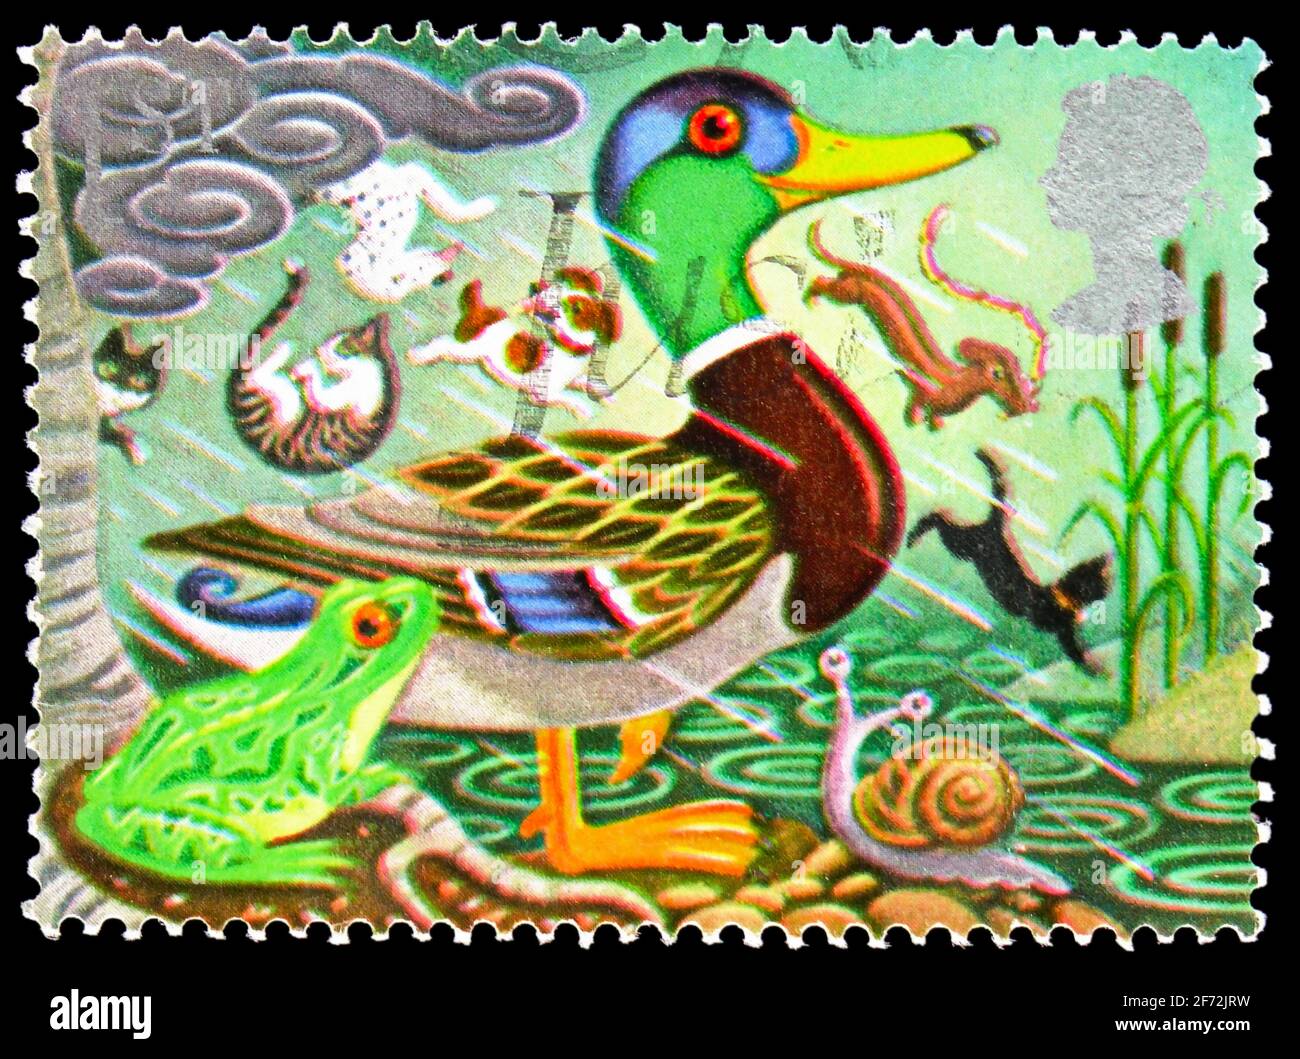 MOSCOU, RUSSIE - 22 DÉCEMBRE 2020: Timbre-poste imprimé au Royaume-Uni montre Mallard et grenouille, timbres de voeux 1991 - série symboles de chance, cir Banque D'Images